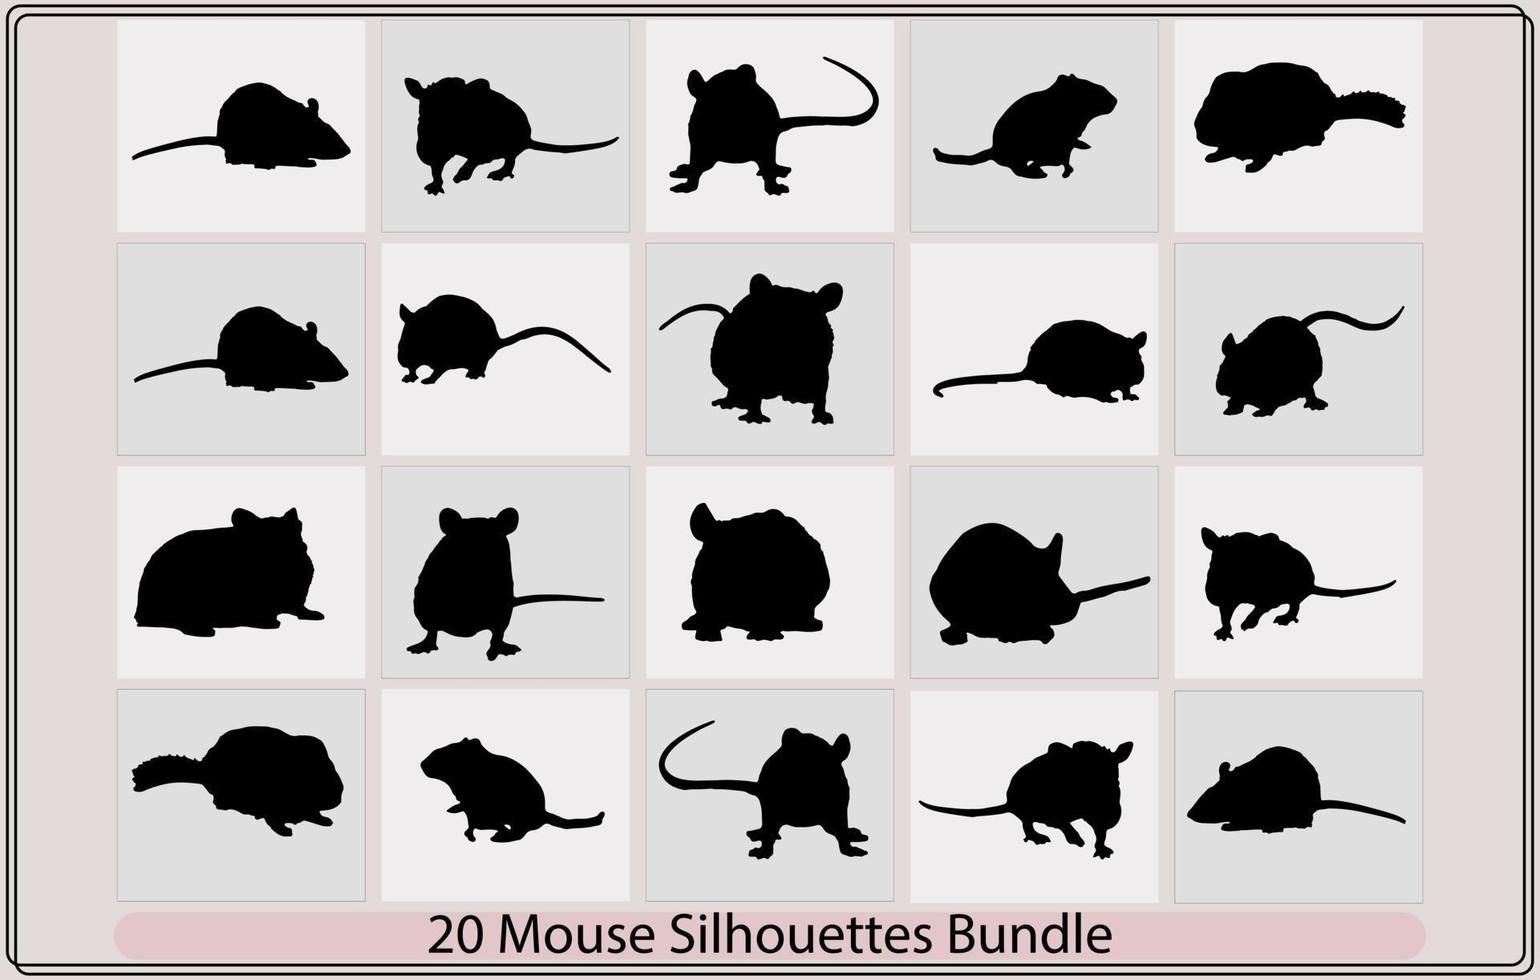 rat et Souris silhouette, silhouette de une réaliste rat, vecteur silhouette de le souris souris silhouettes, ensemble de silhouettes Souris rat